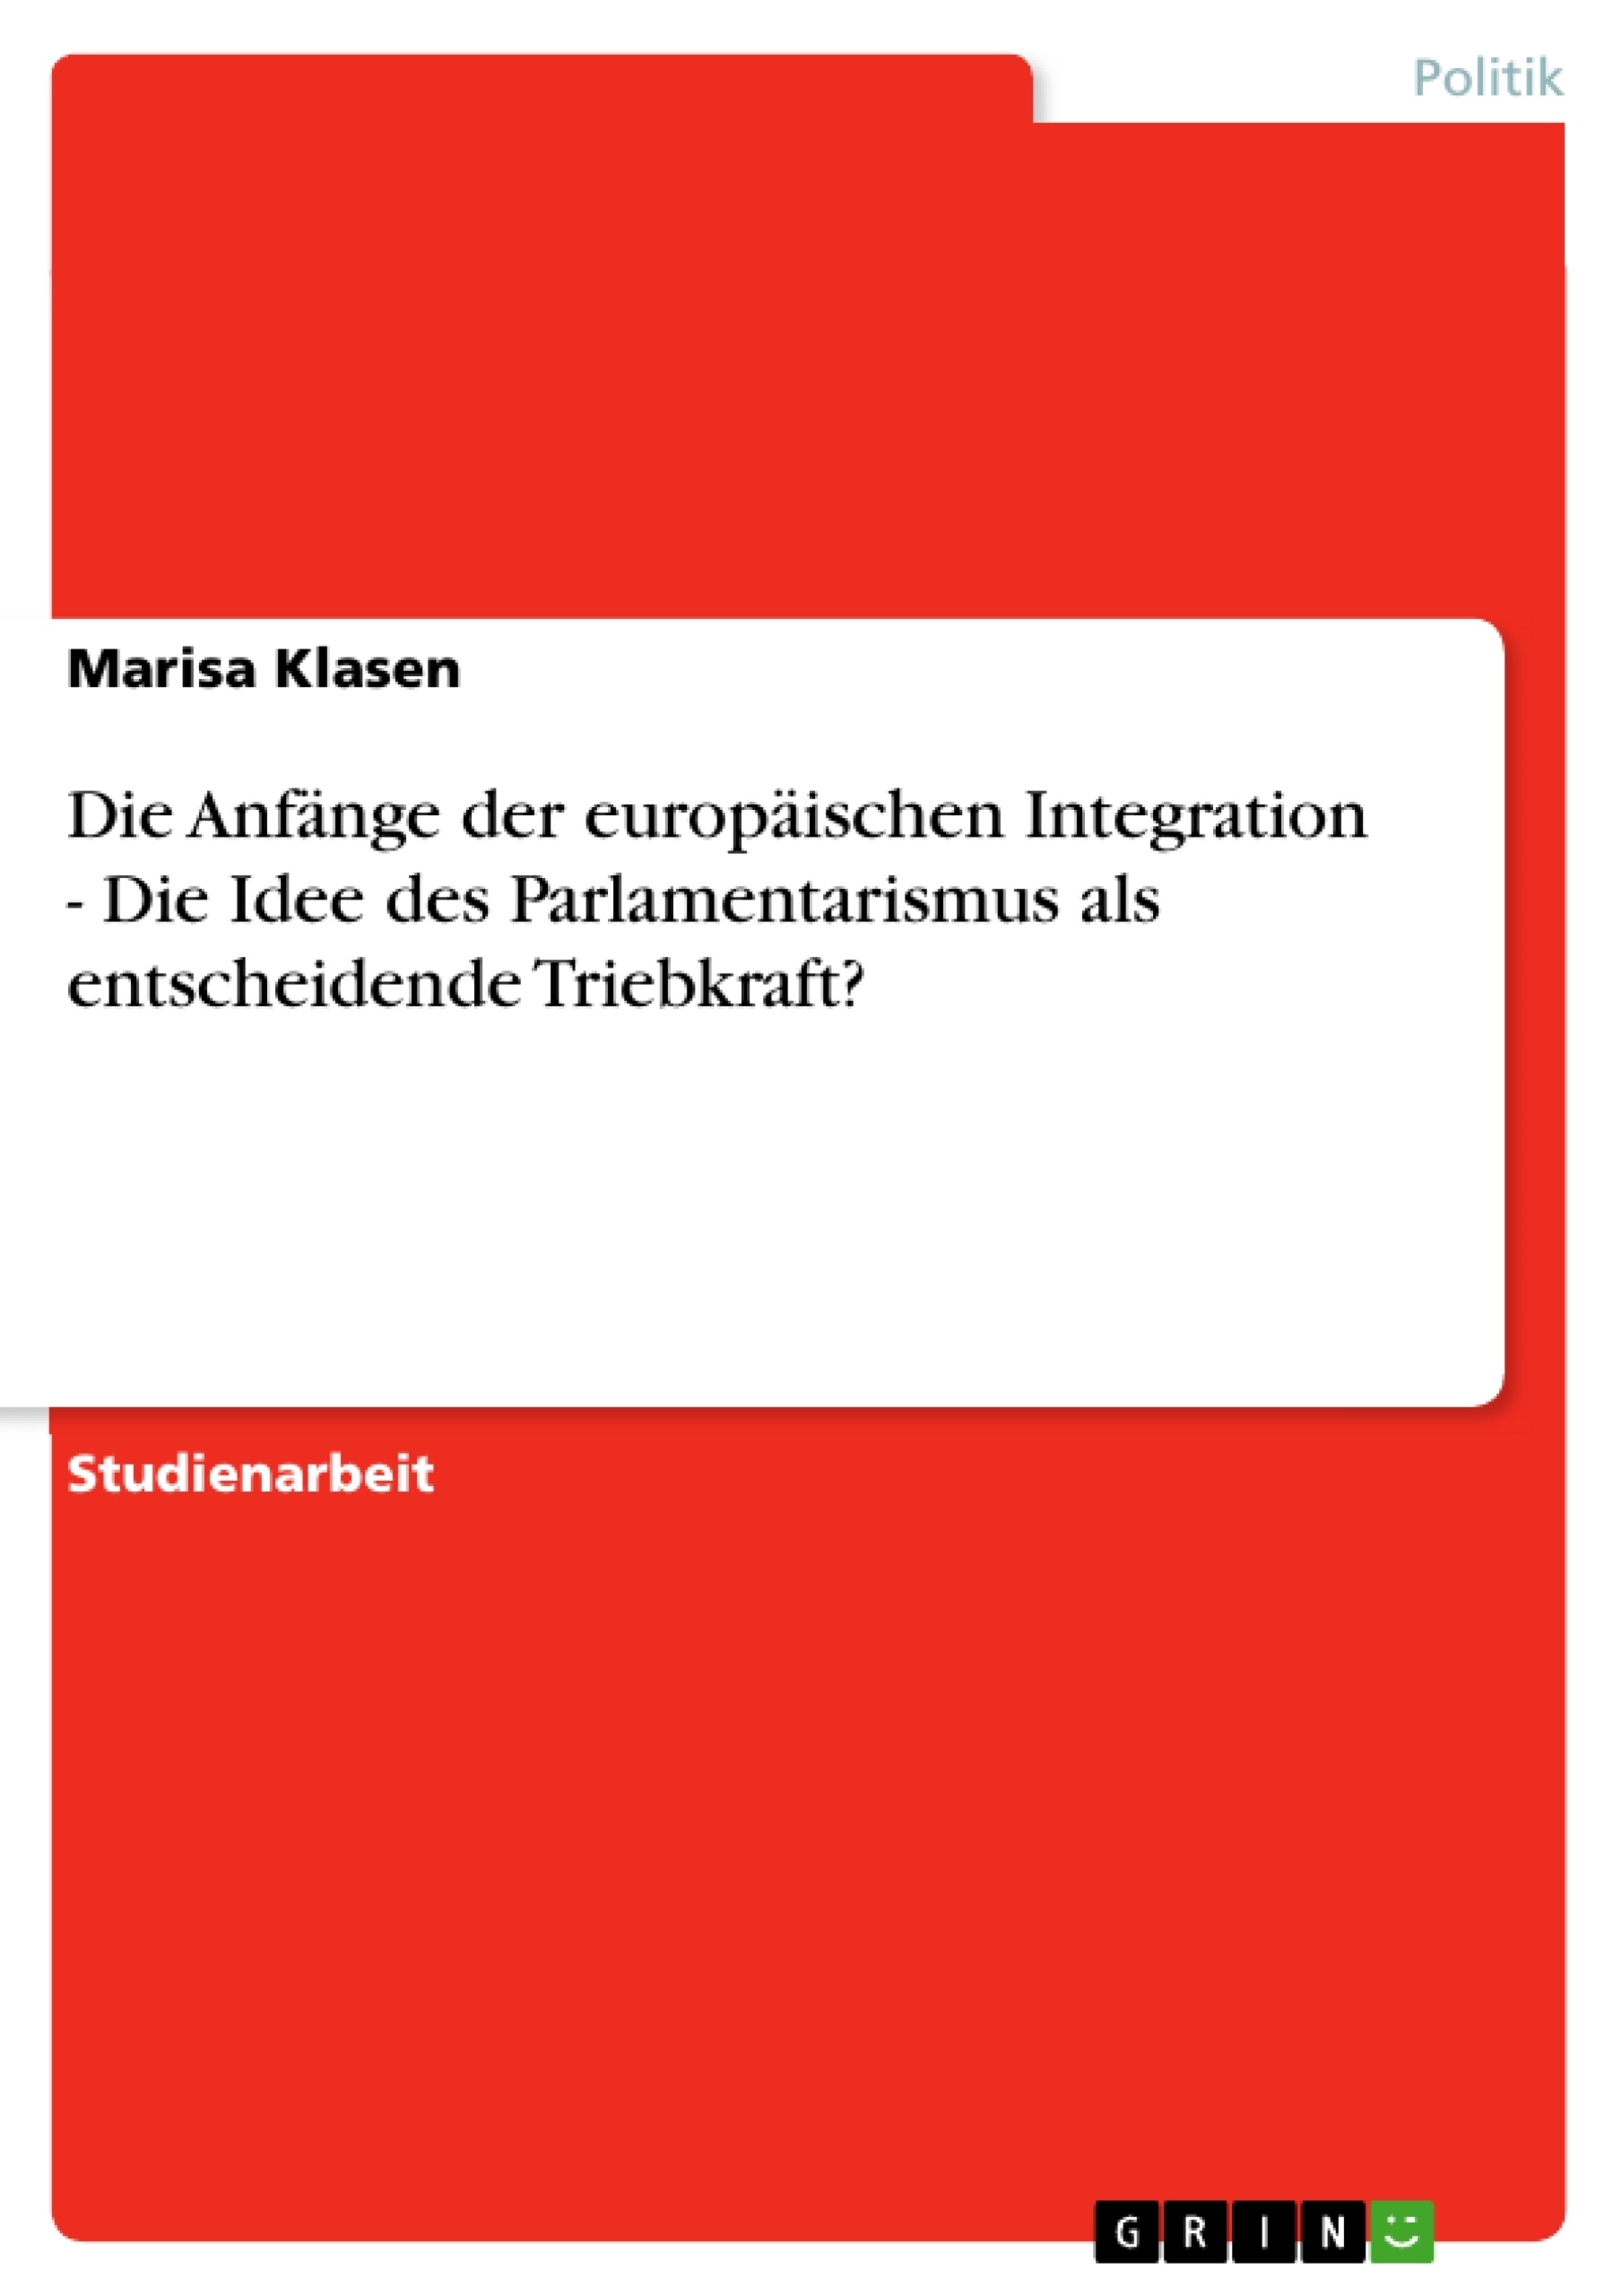 Titre: Die Anfänge der europäischen Integration - Die Idee des Parlamentarismus als entscheidende Triebkraft?